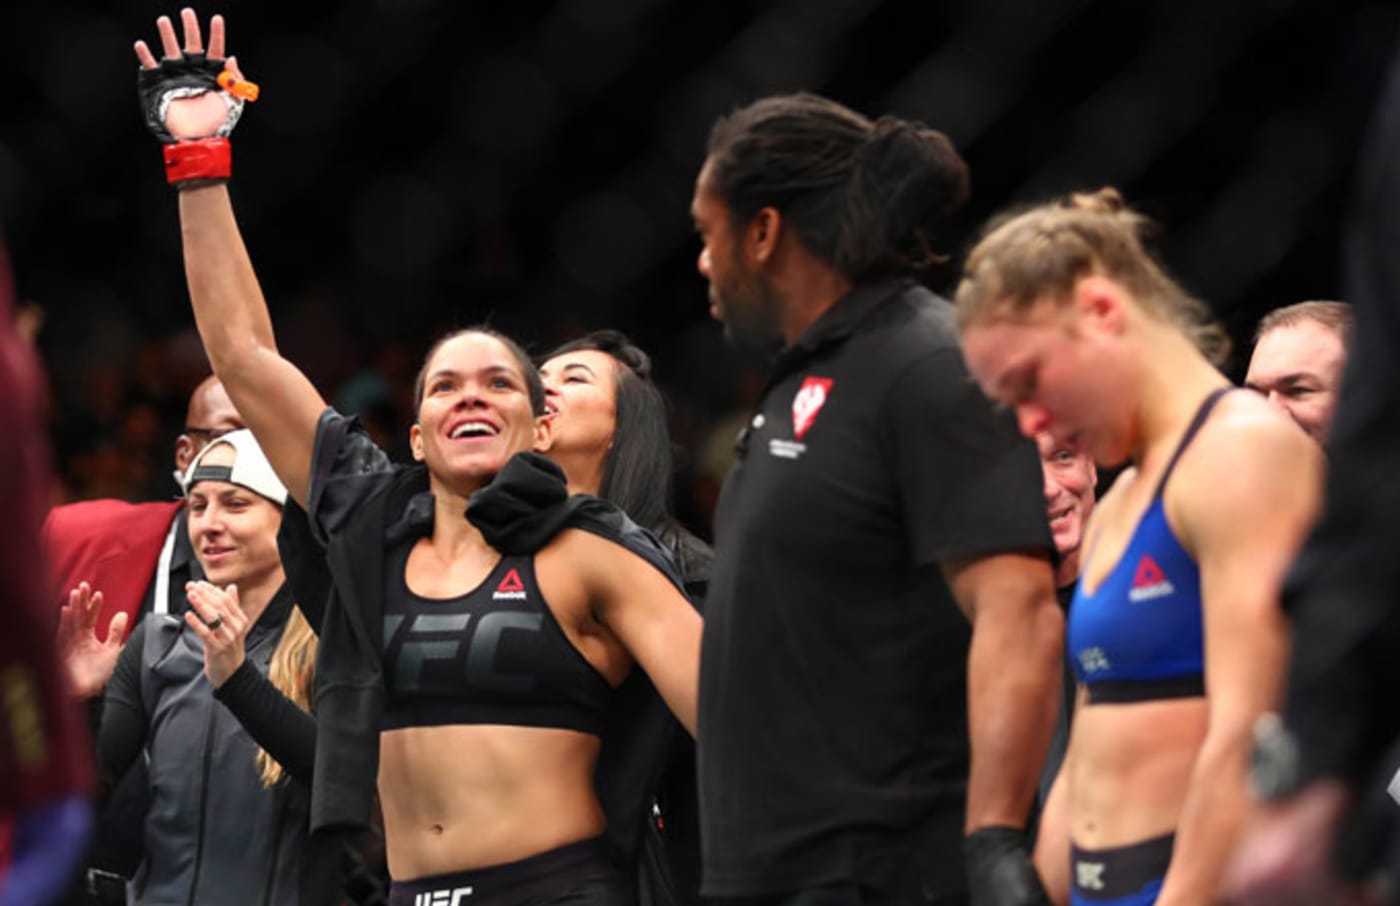 Amanda Nunes celebrates her victory over Ronda Rousey at UFC 207.